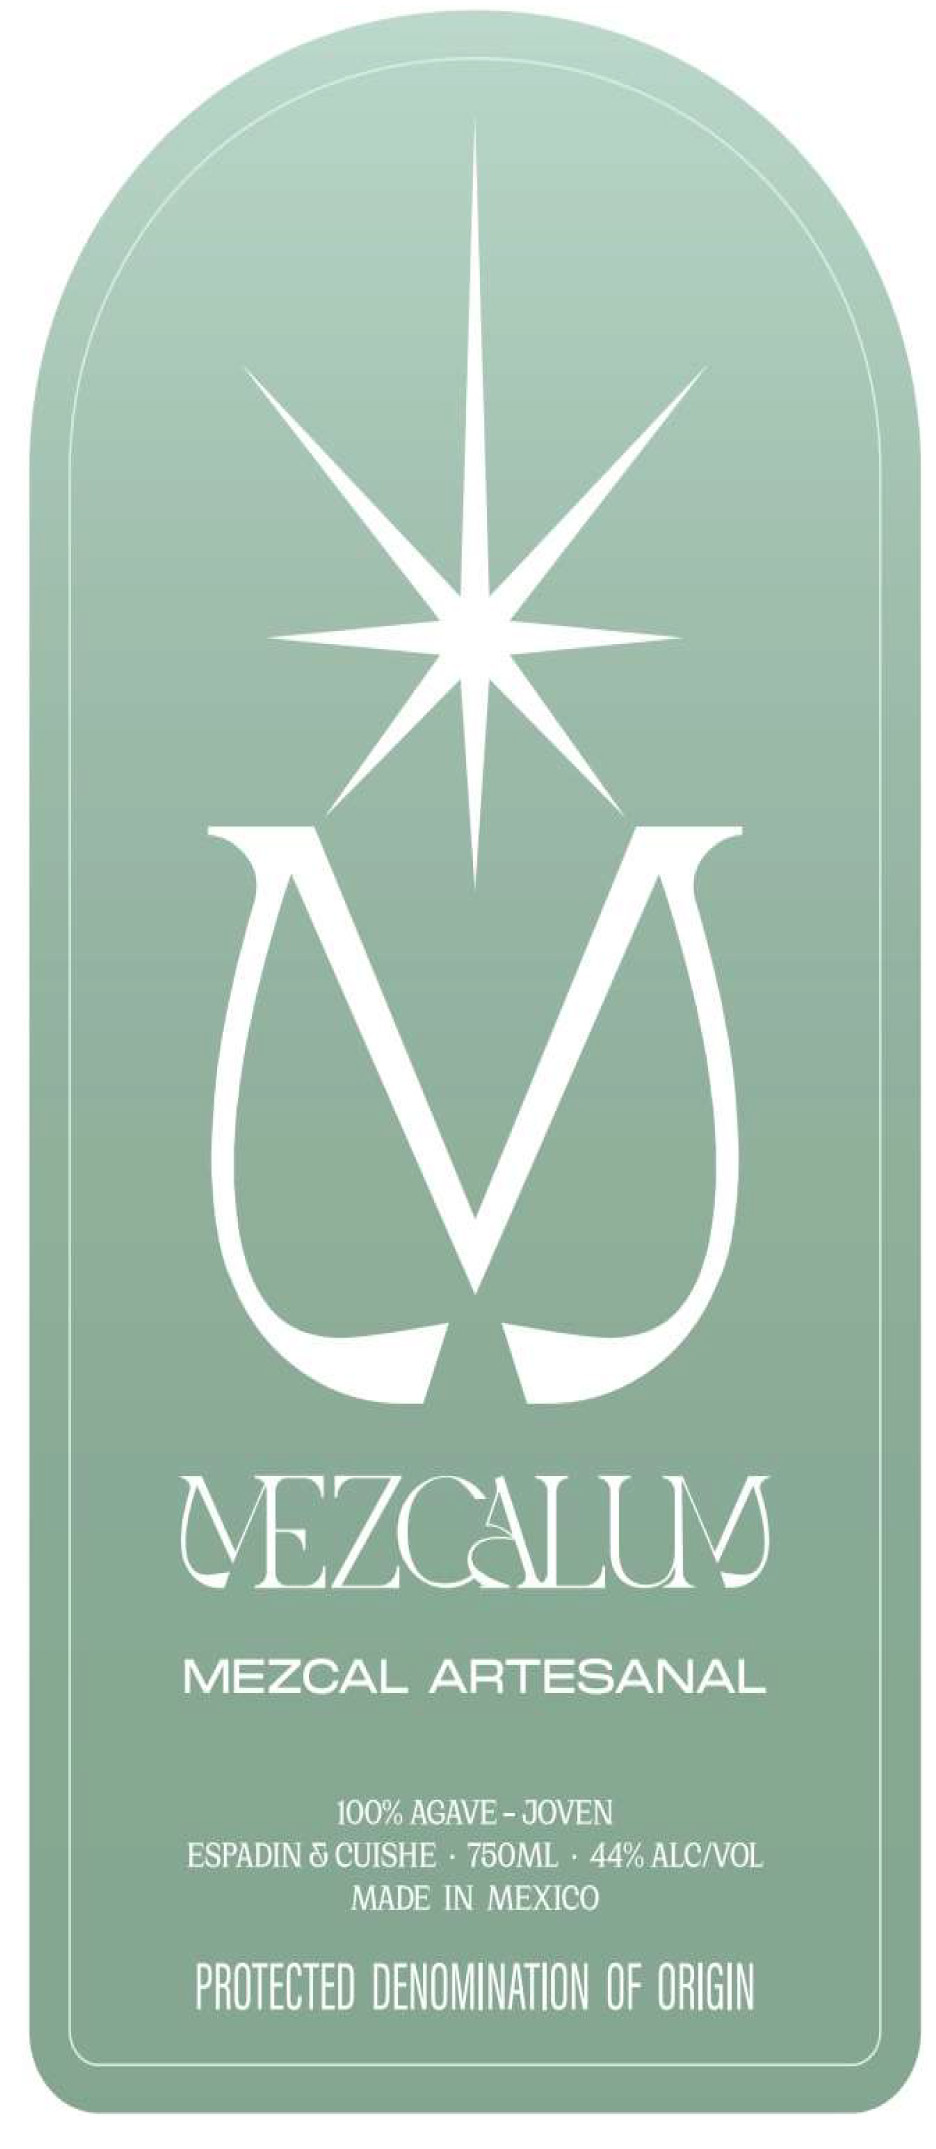 Mezcalum Mezcal Artesanal label